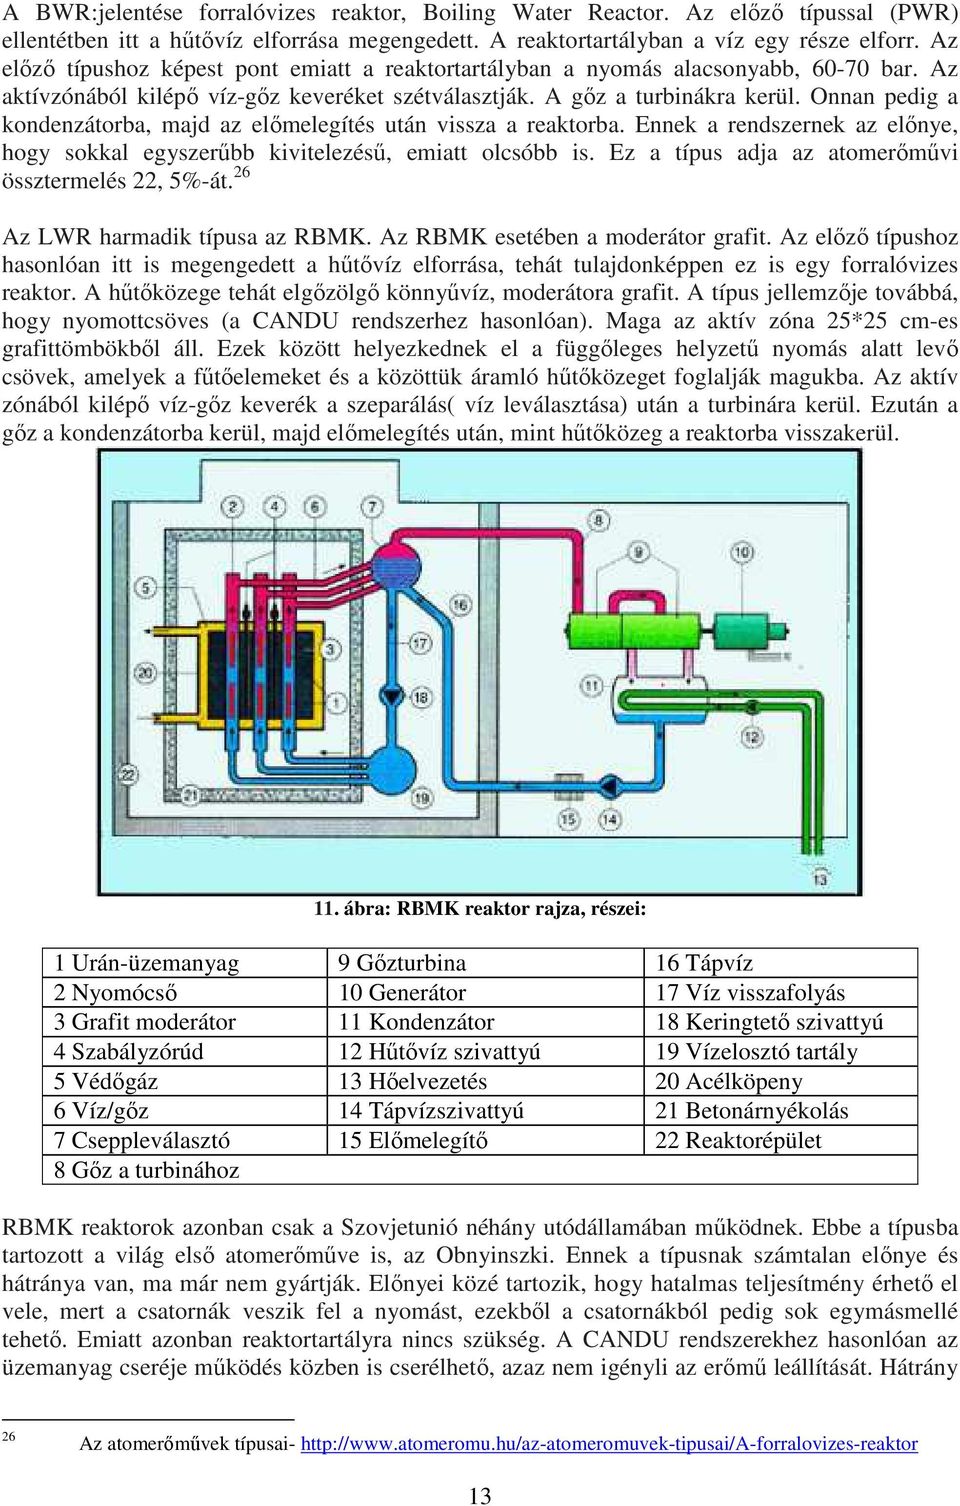 Onnan pedig a kondenzátorba, majd az előmelegítés után vissza a reaktorba. Ennek a rendszernek az előnye, hogy sokkal egyszerűbb kivitelezésű, emiatt olcsóbb is.